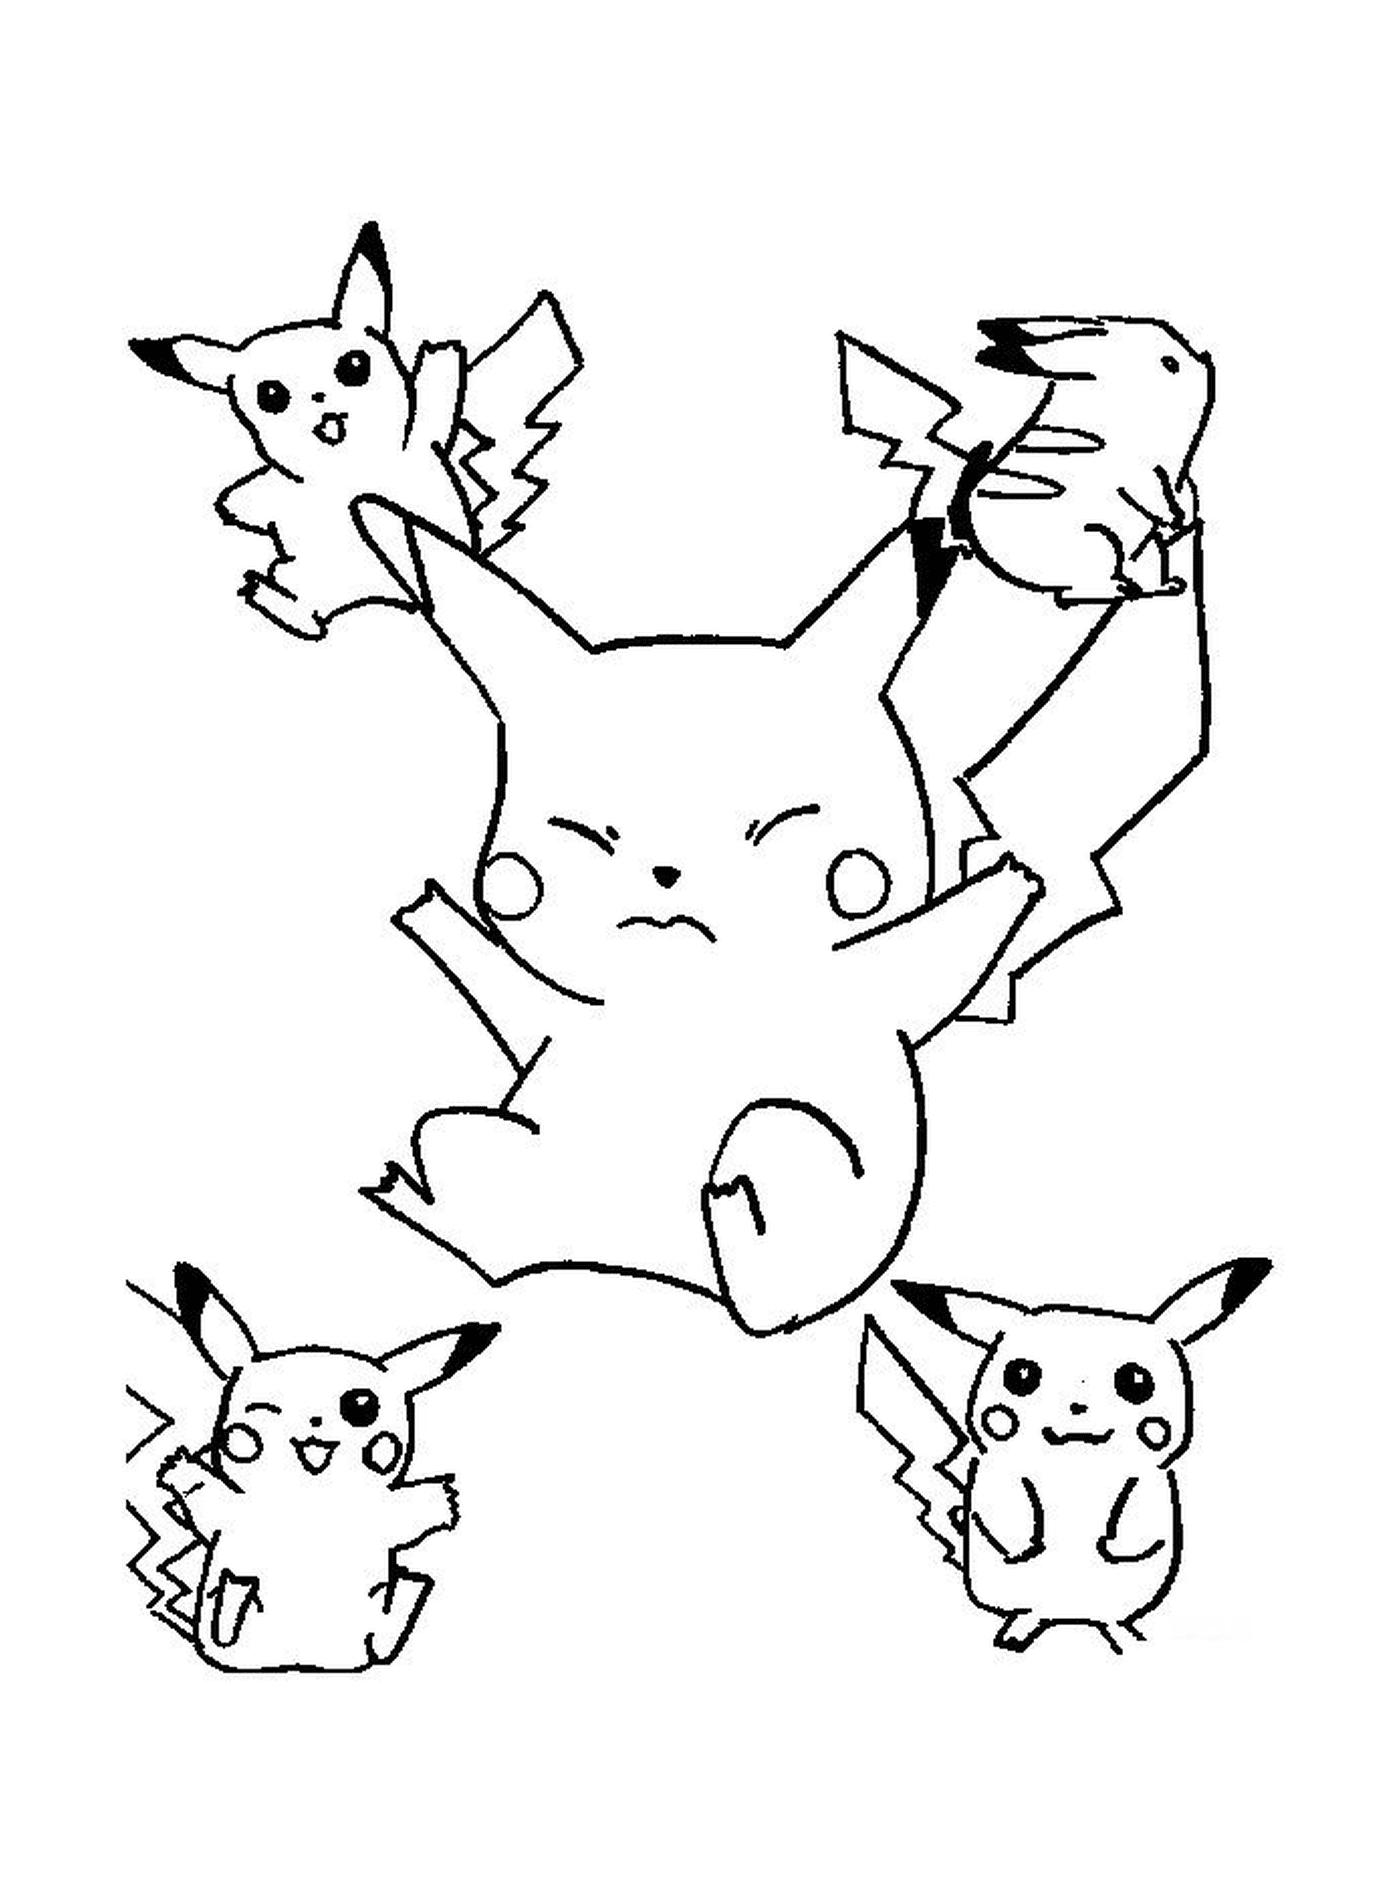  Eine Gruppe von Pikachu springen in der Luft 